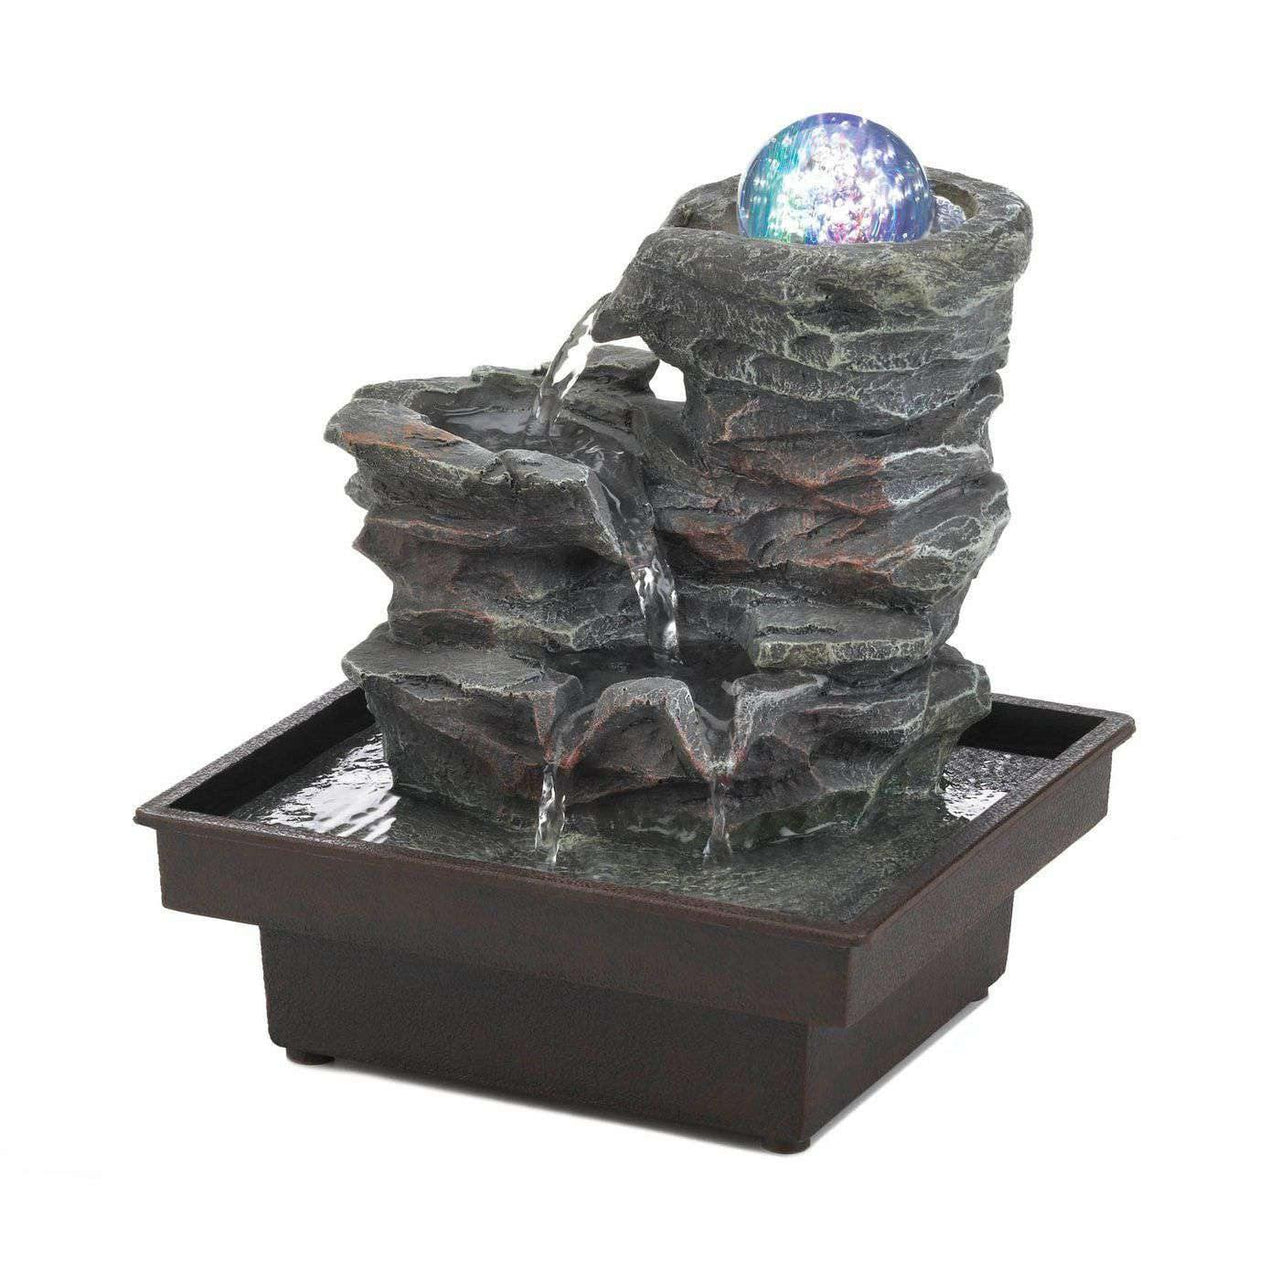 Glass Orb On Rocks Tabletop Fountain - The Fox Decor